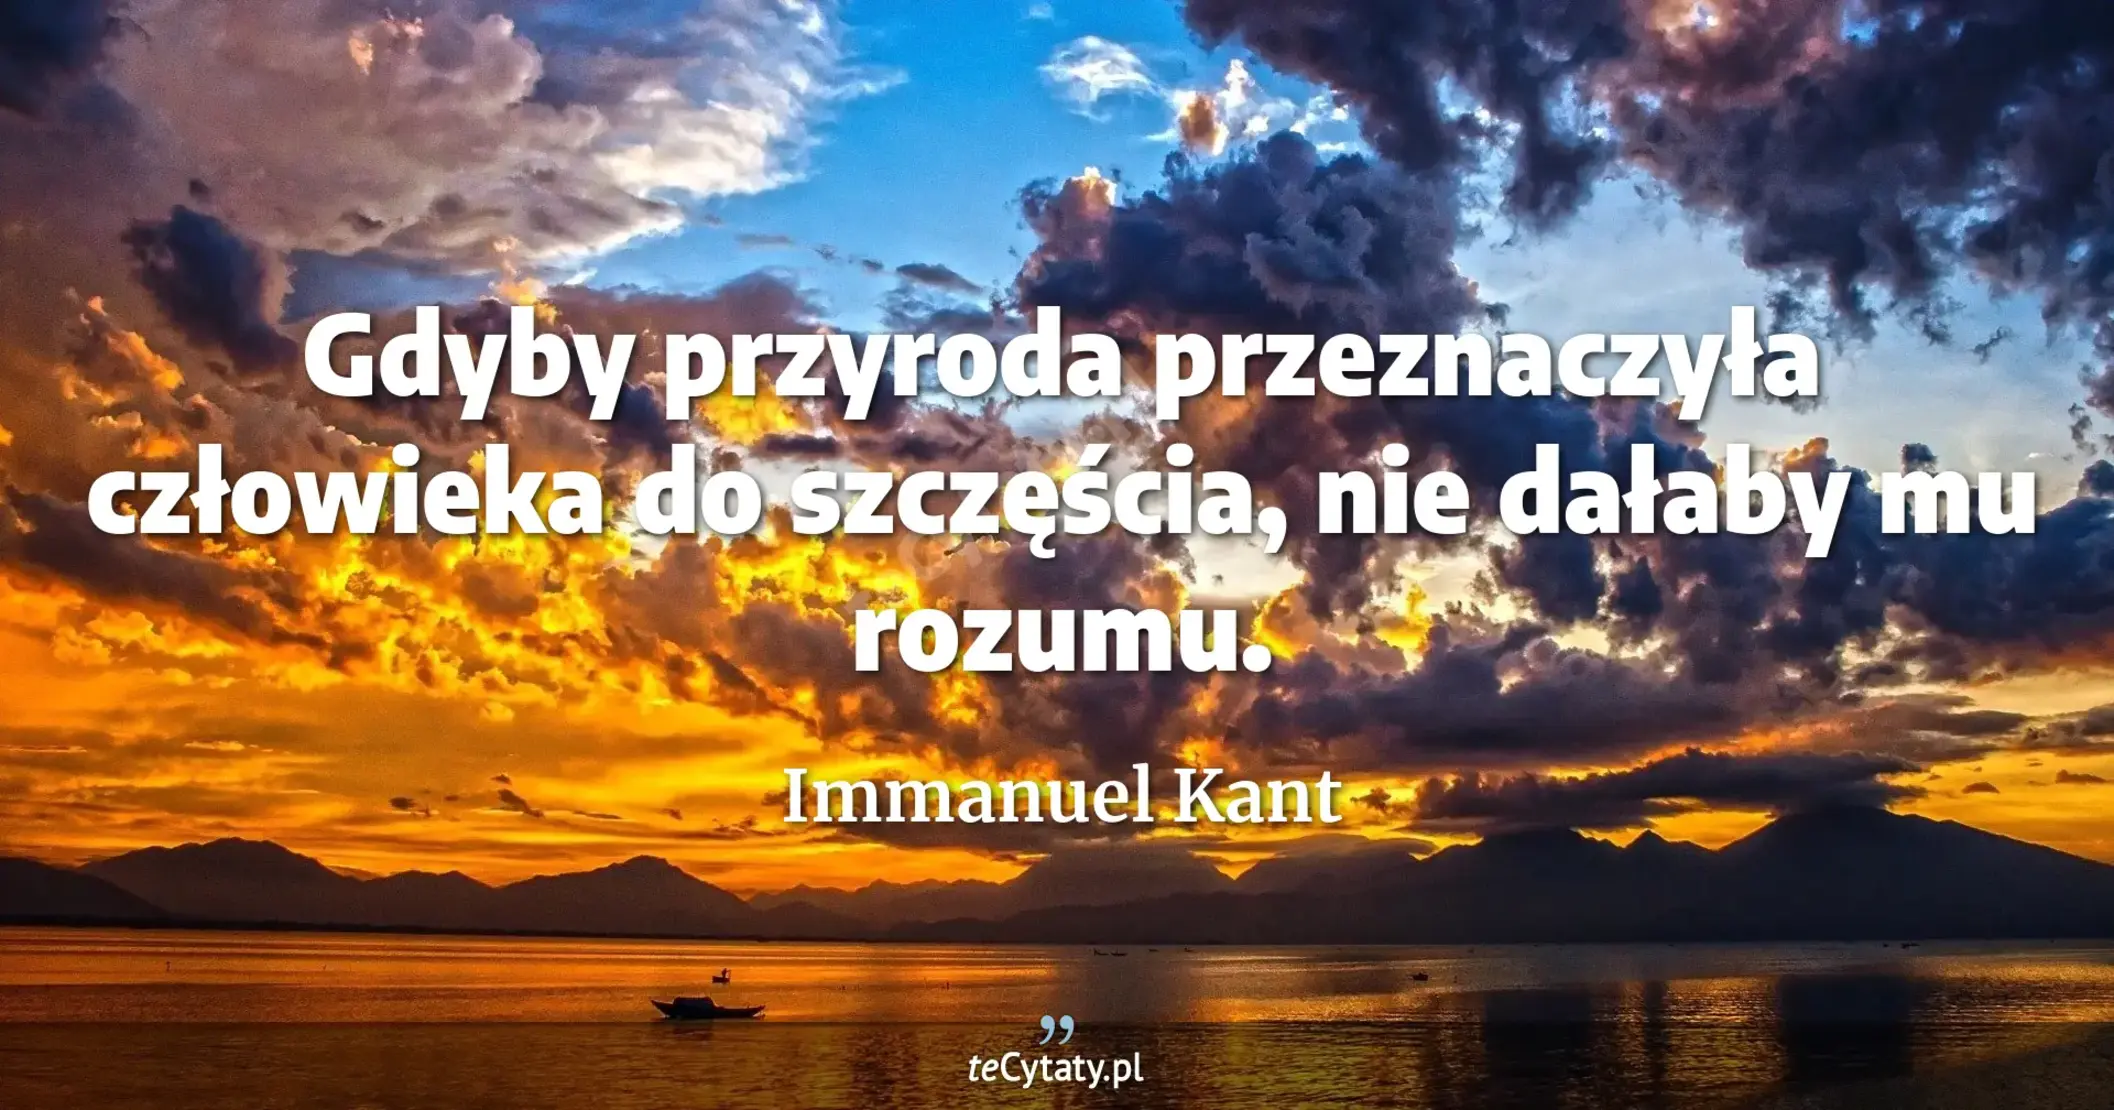 Gdyby przyroda przeznaczyła człowieka do szczęścia, nie dałaby mu rozumu. - Immanuel Kant